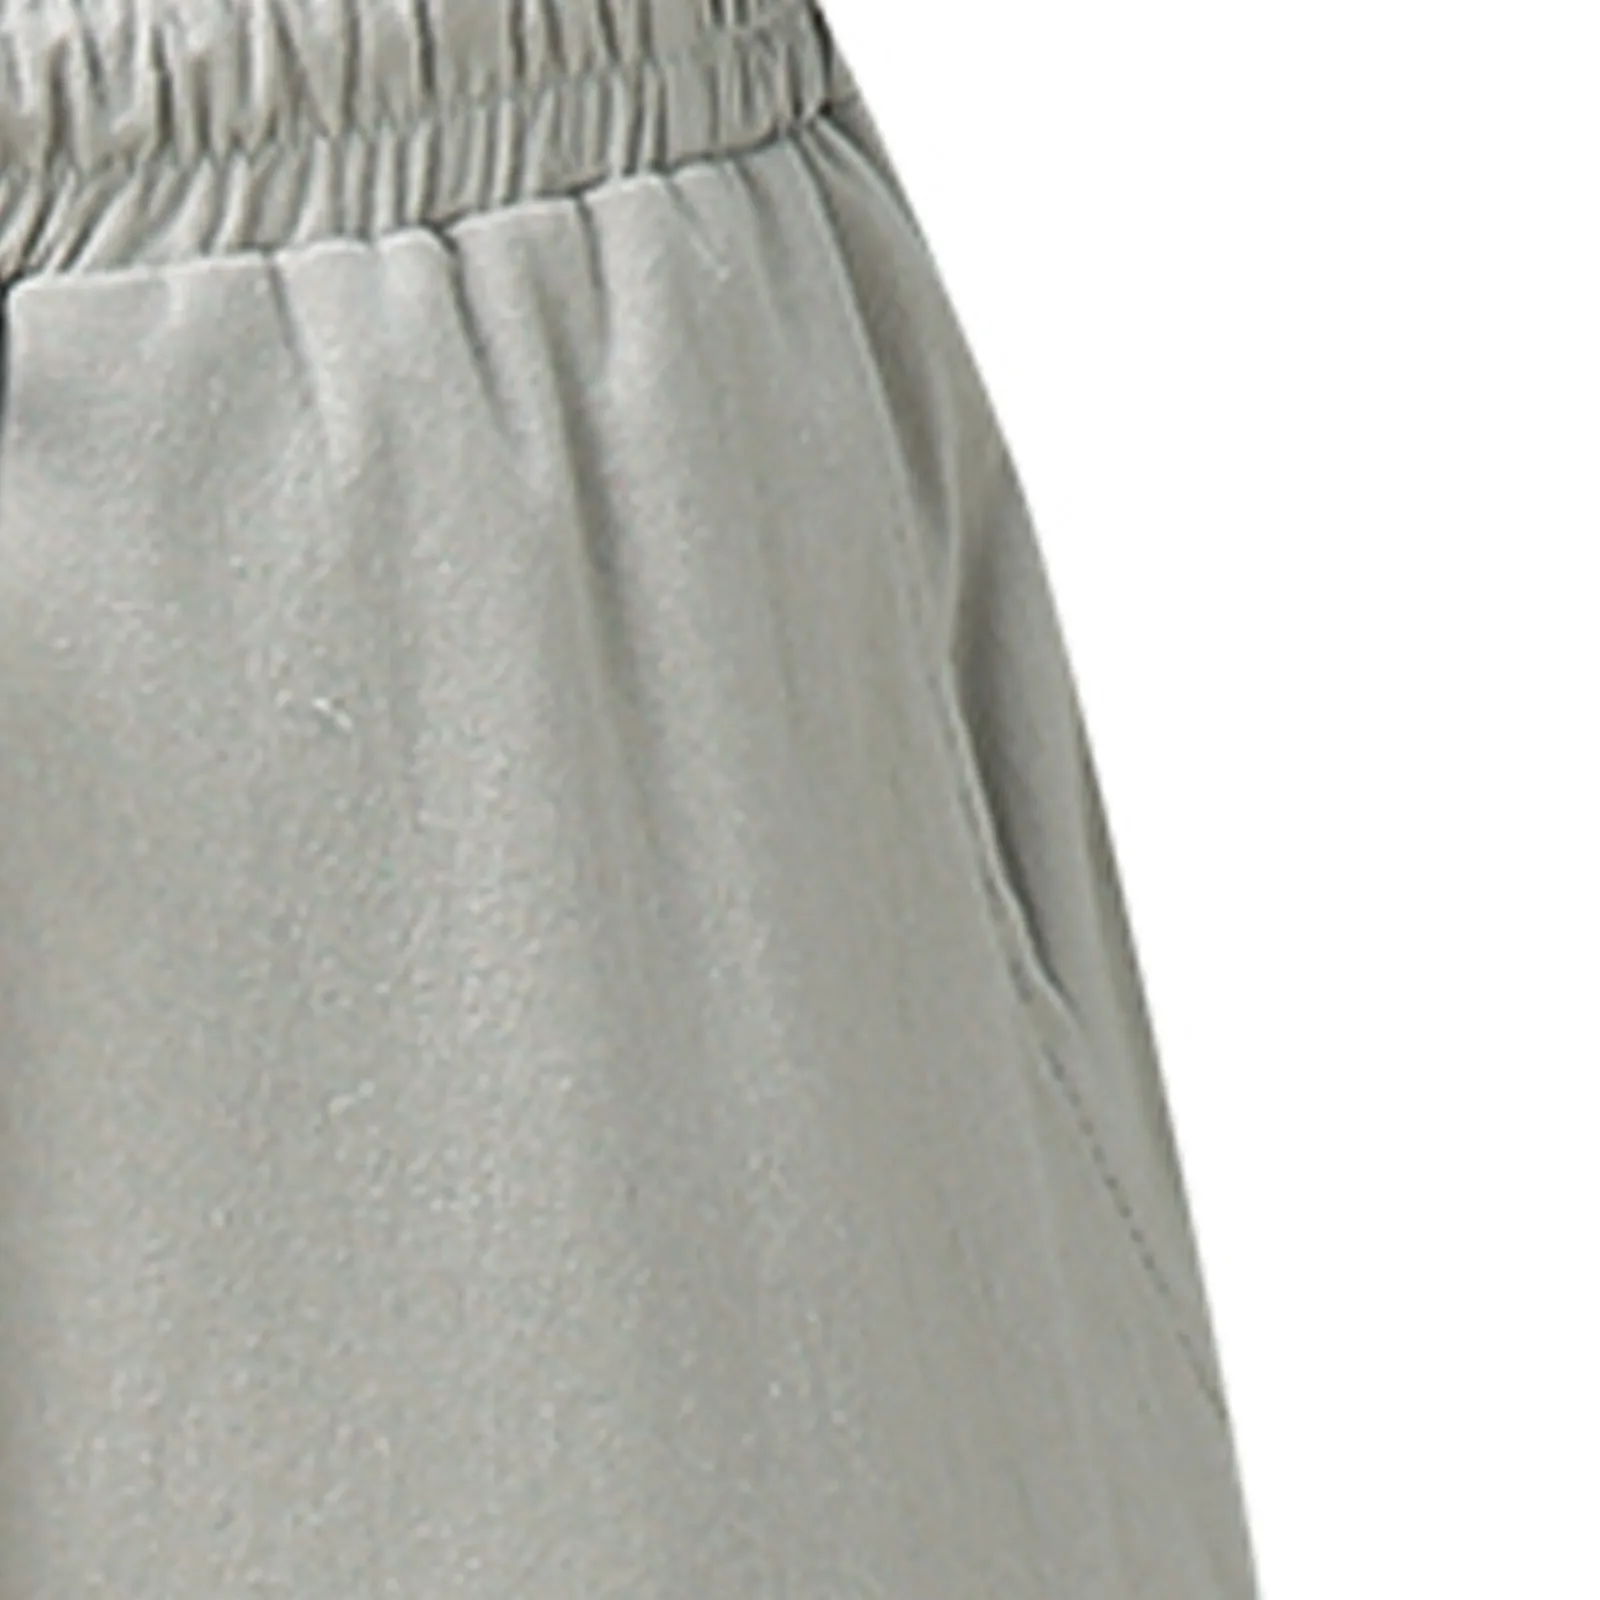 mens harem joggers Fashion Men's Casual Pants Summer Casual Lace-up Pocket Solid Cotton Linen Trousers Pants Drawstring Sweatpants спортивные штаны harem pants men